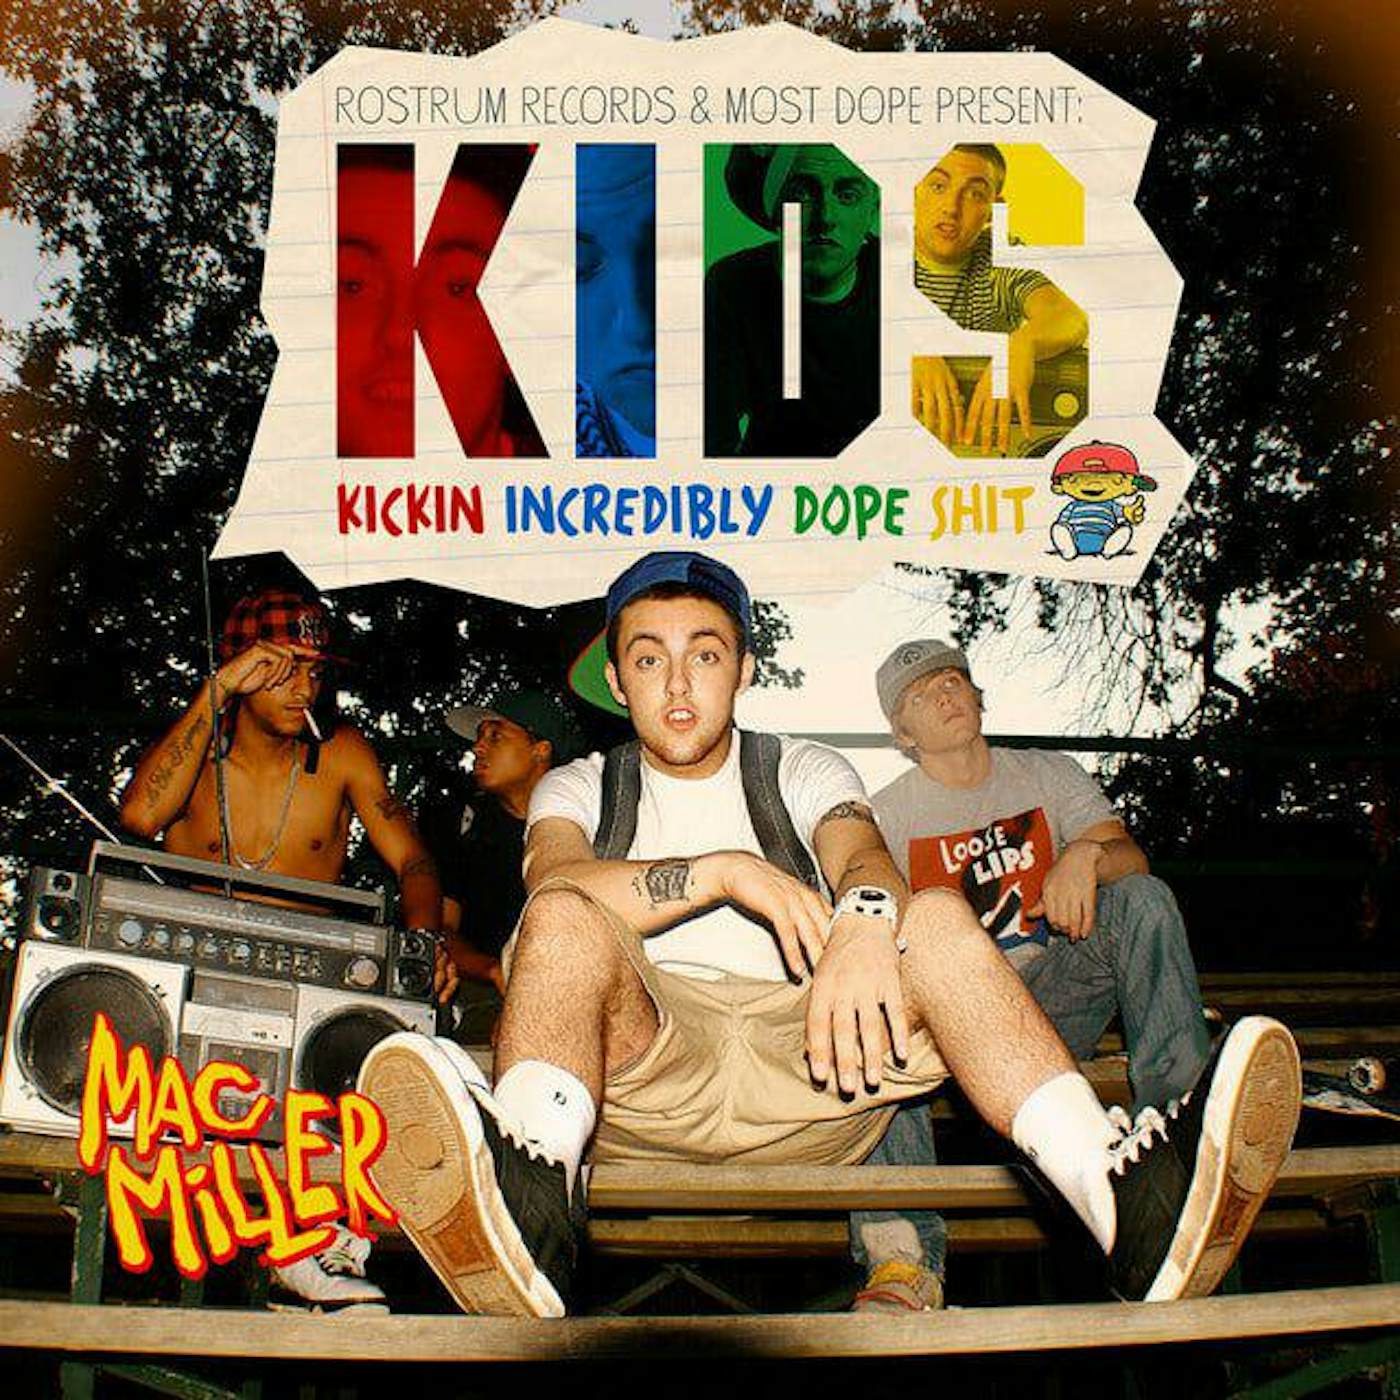 KIDS Mac Miller Kickin incredibly dope shit shirt, hoodie, sweater